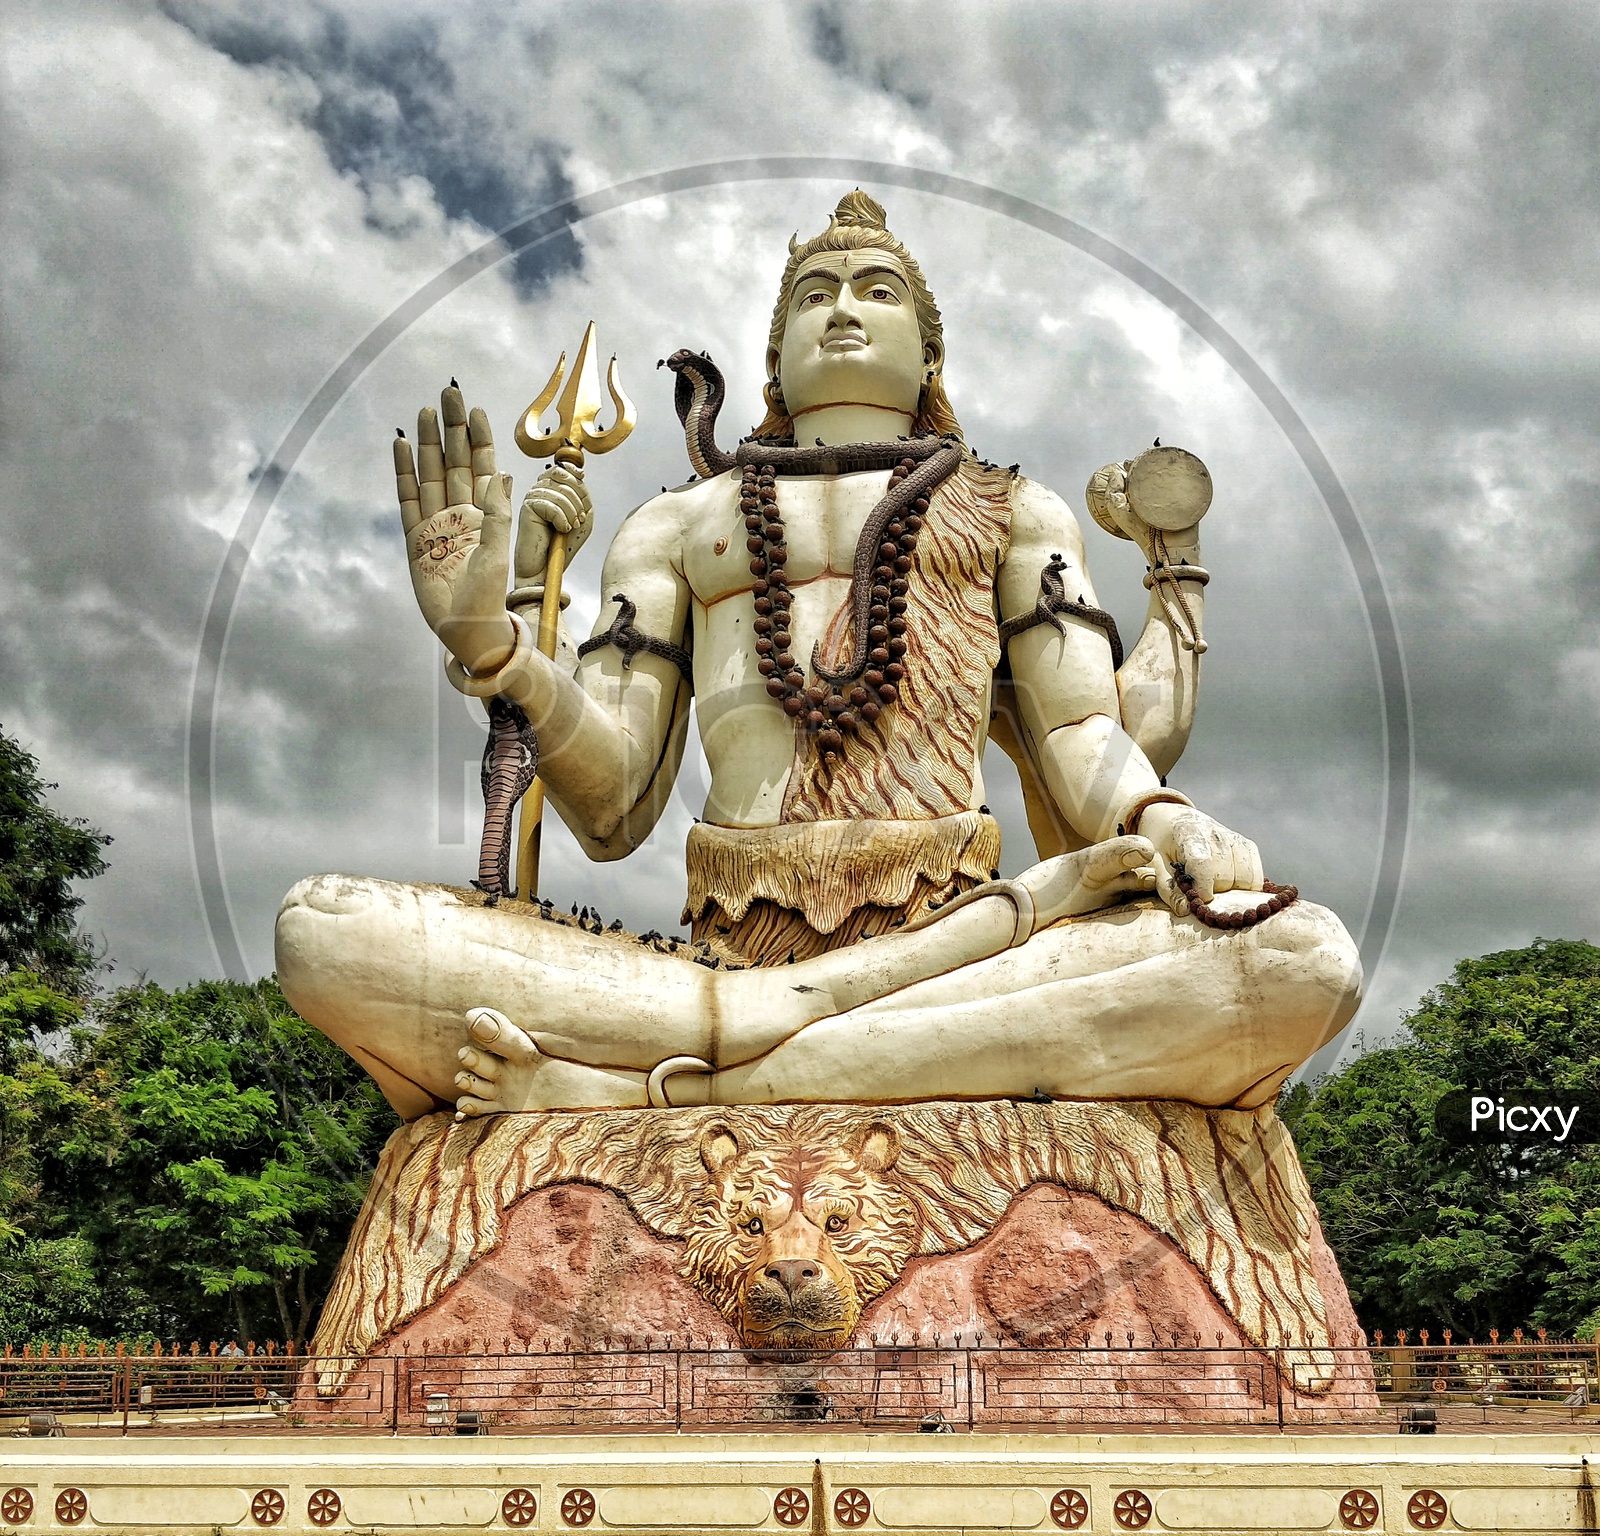 Lord shiva statue at nageshwar